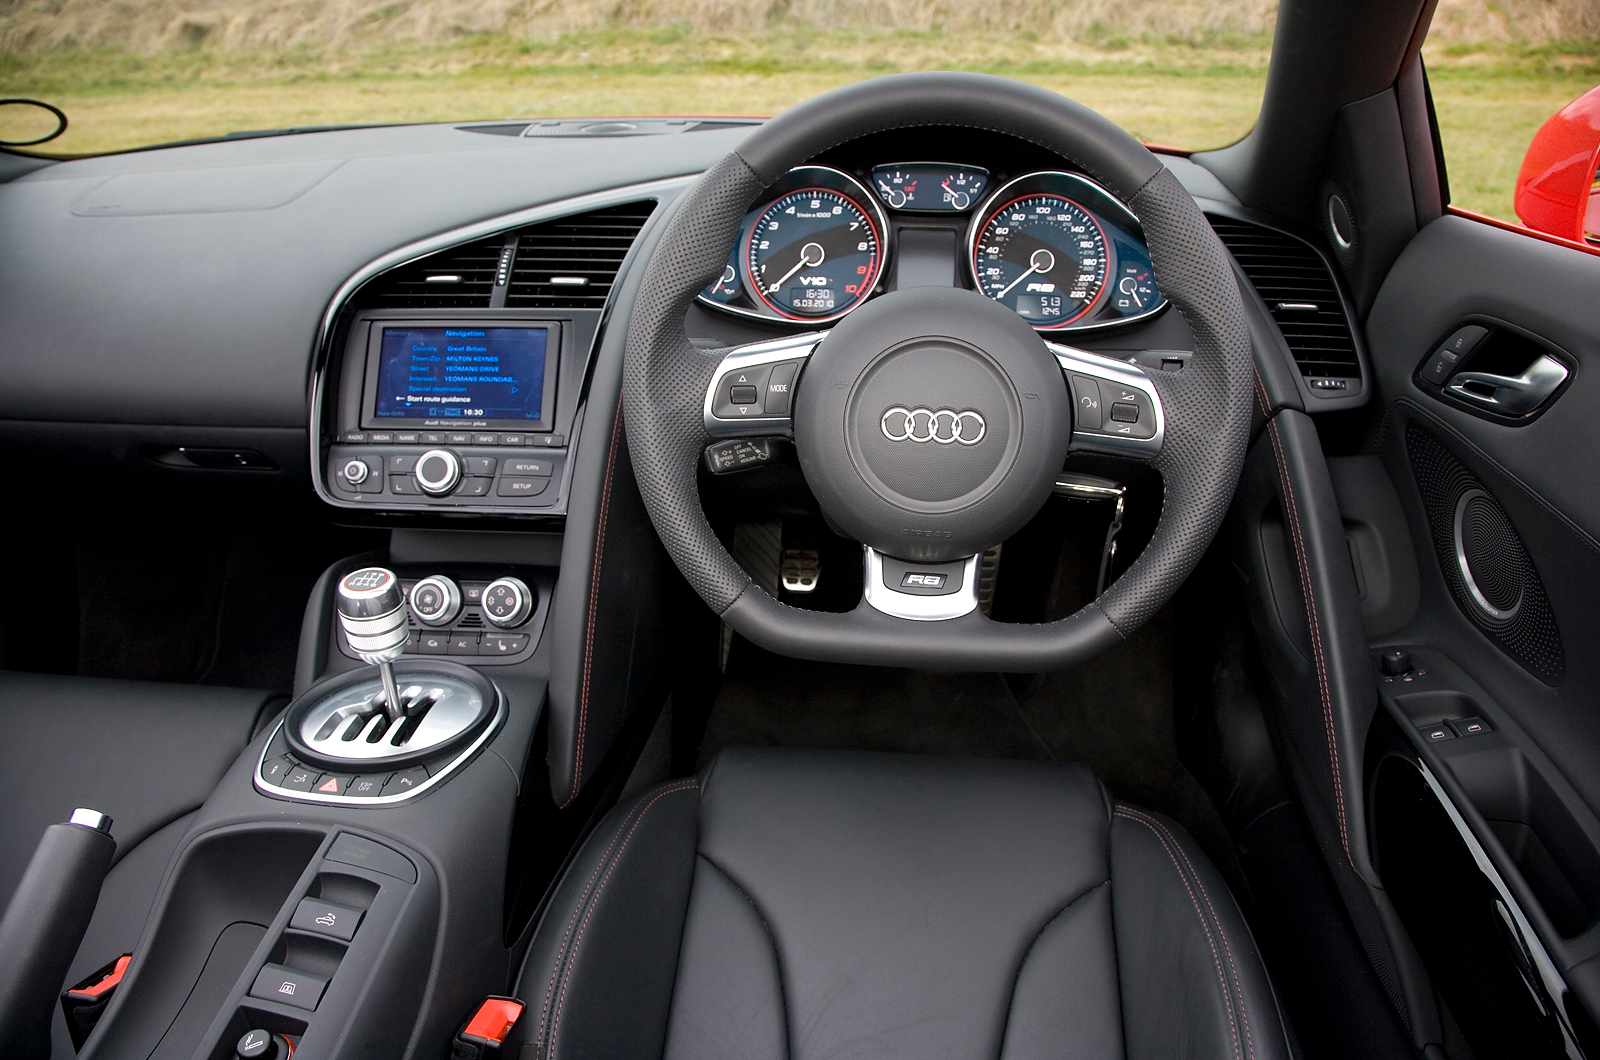 Audi R8 V10 Spyder's interior